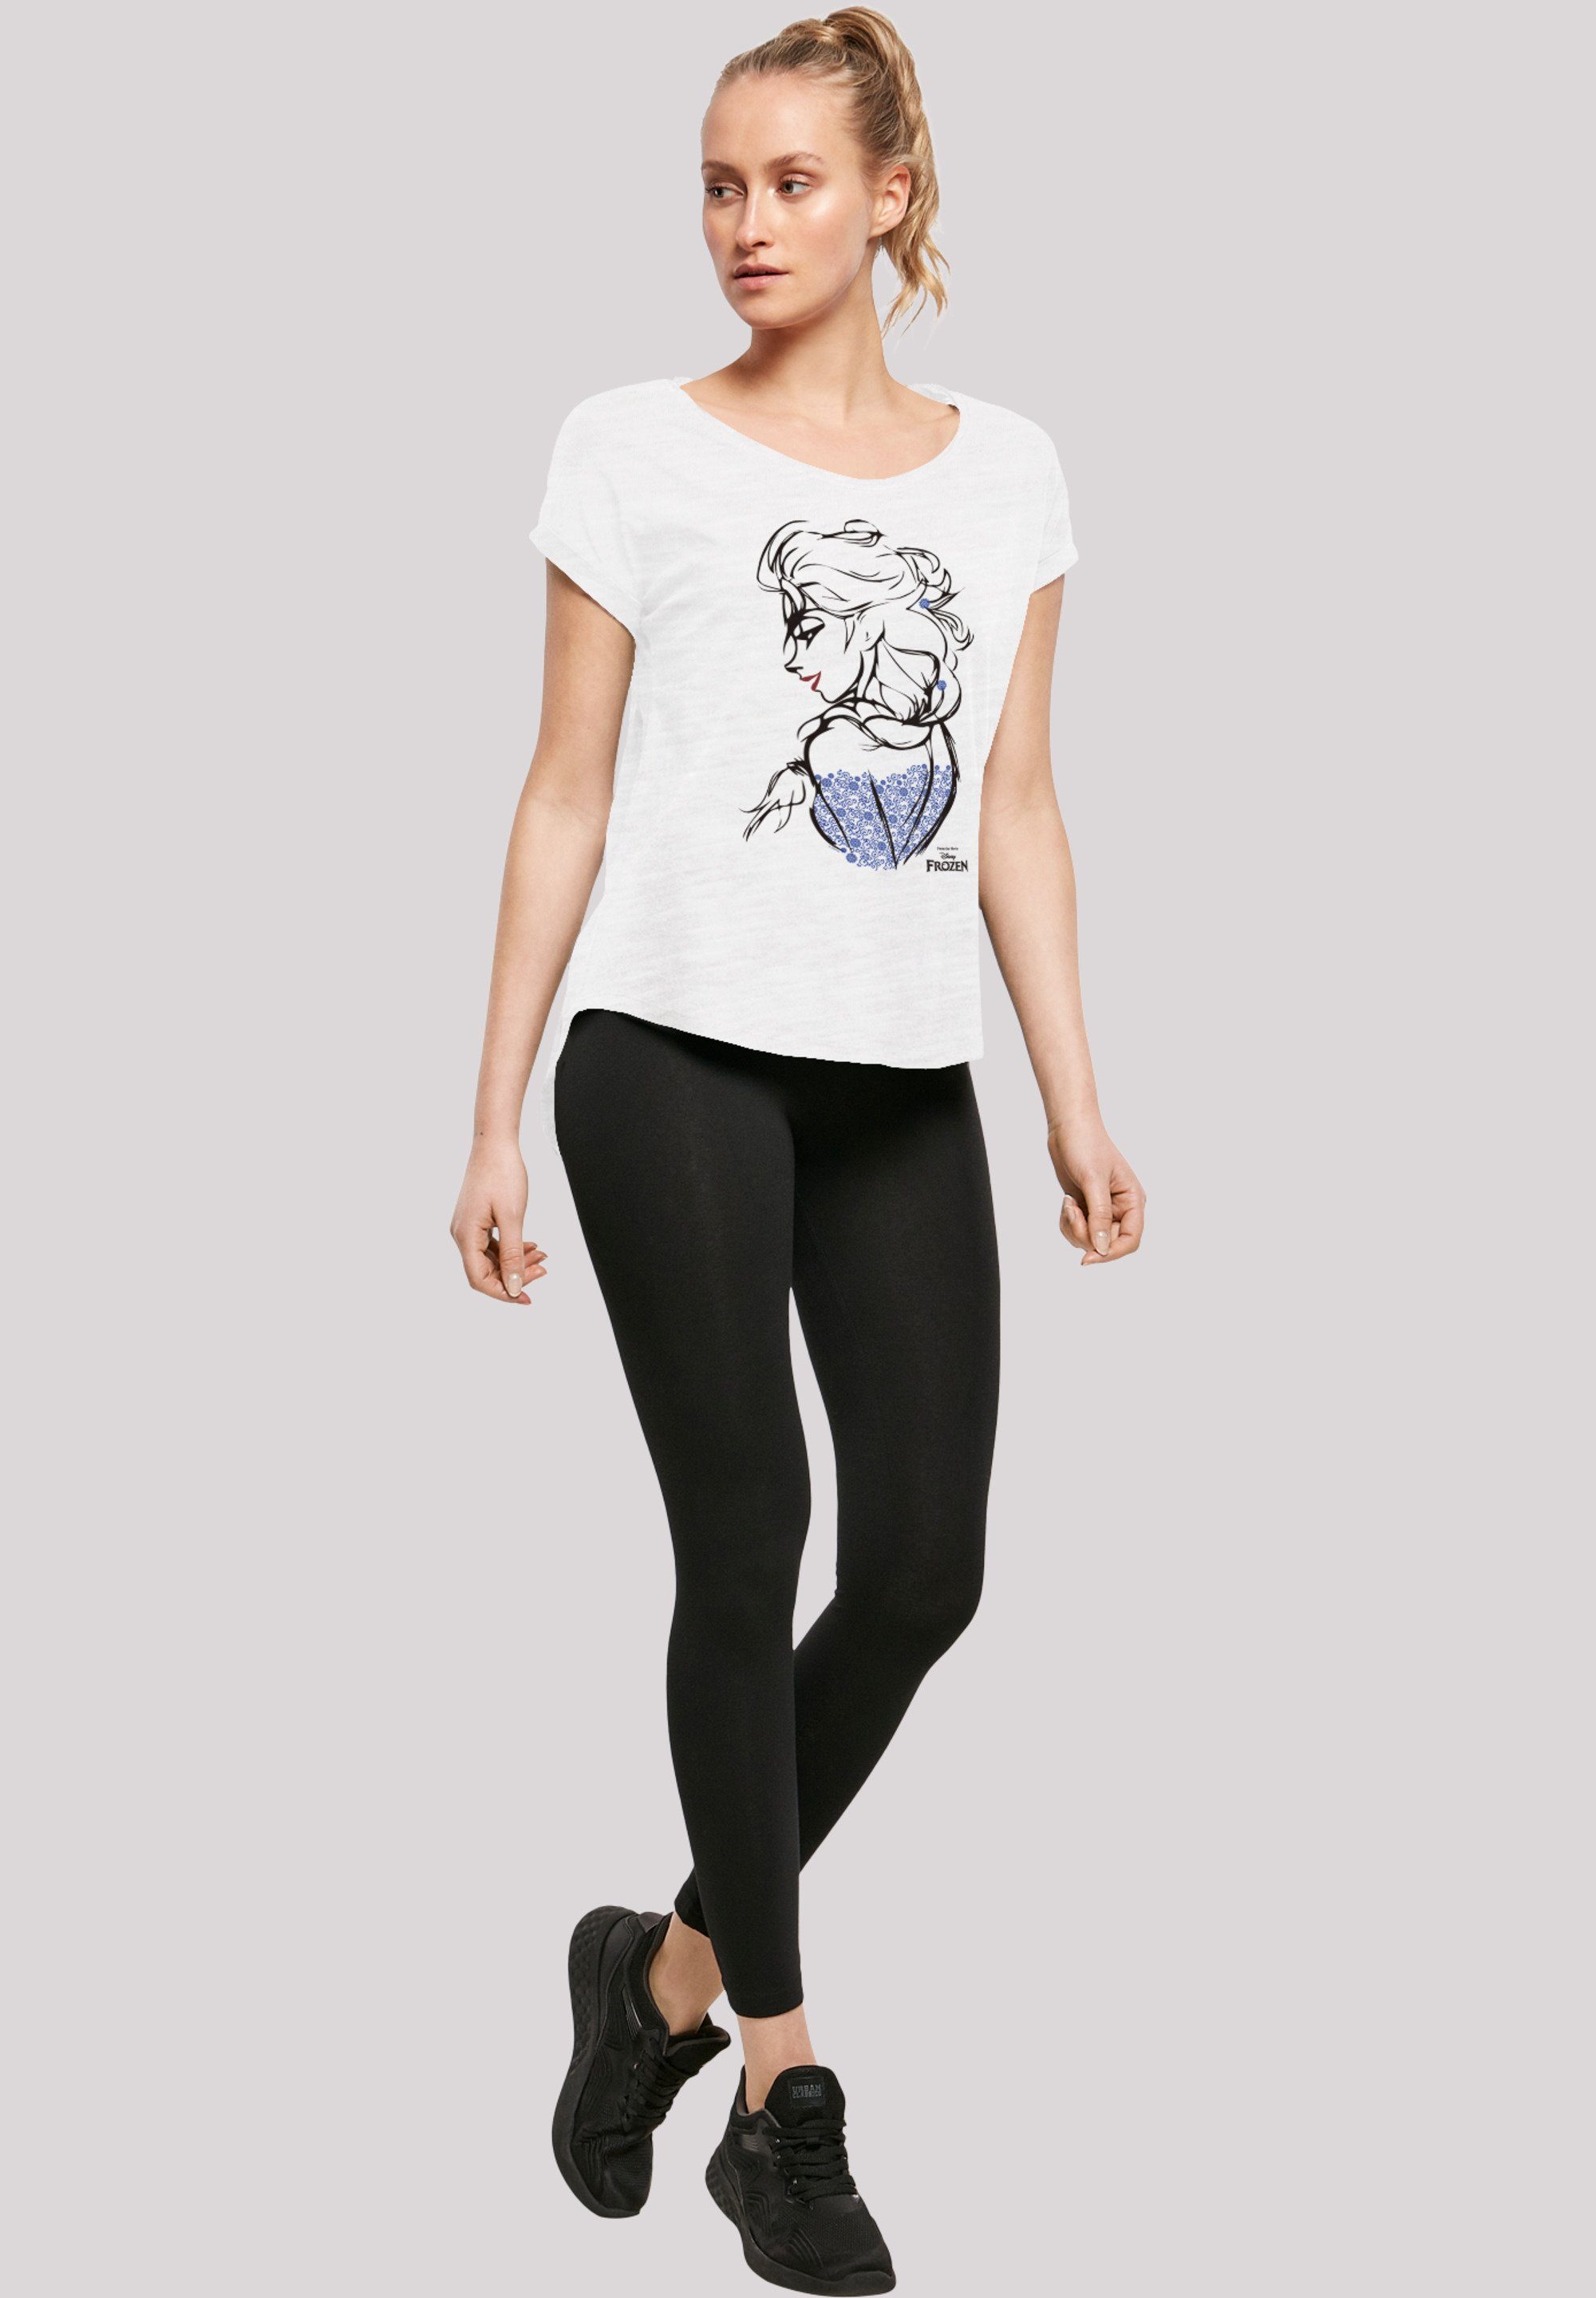 F4NT4STIC Sketch Elsa Frozen T-Shirt Mono Print